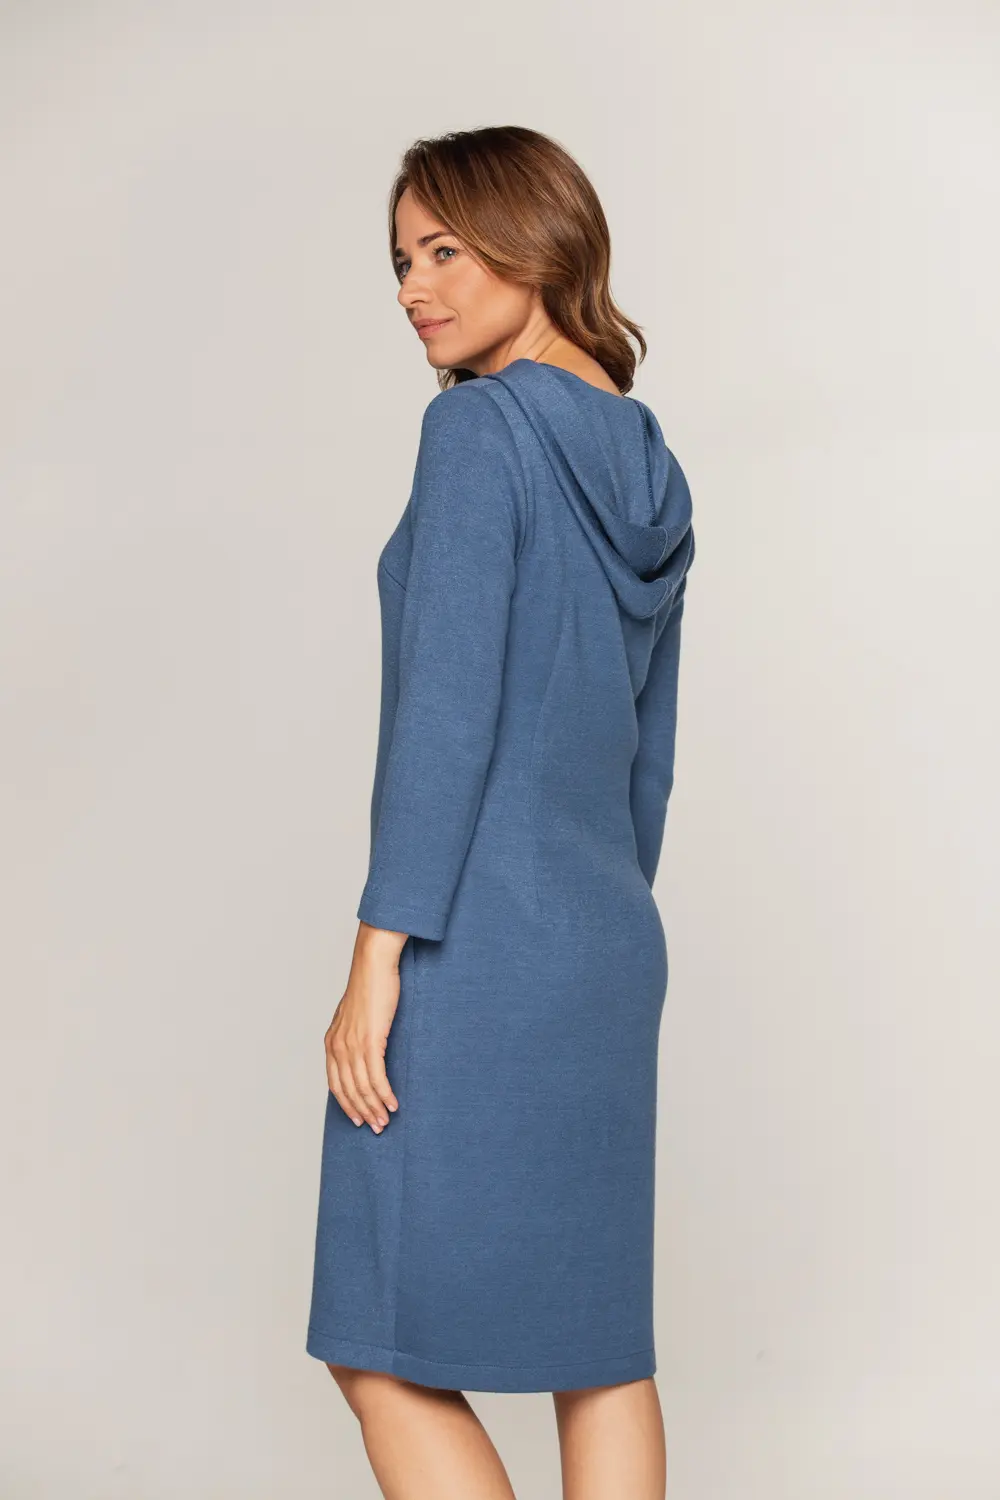 niebieska sukienka z kapturem dzianinowa sweterkowa polska marka